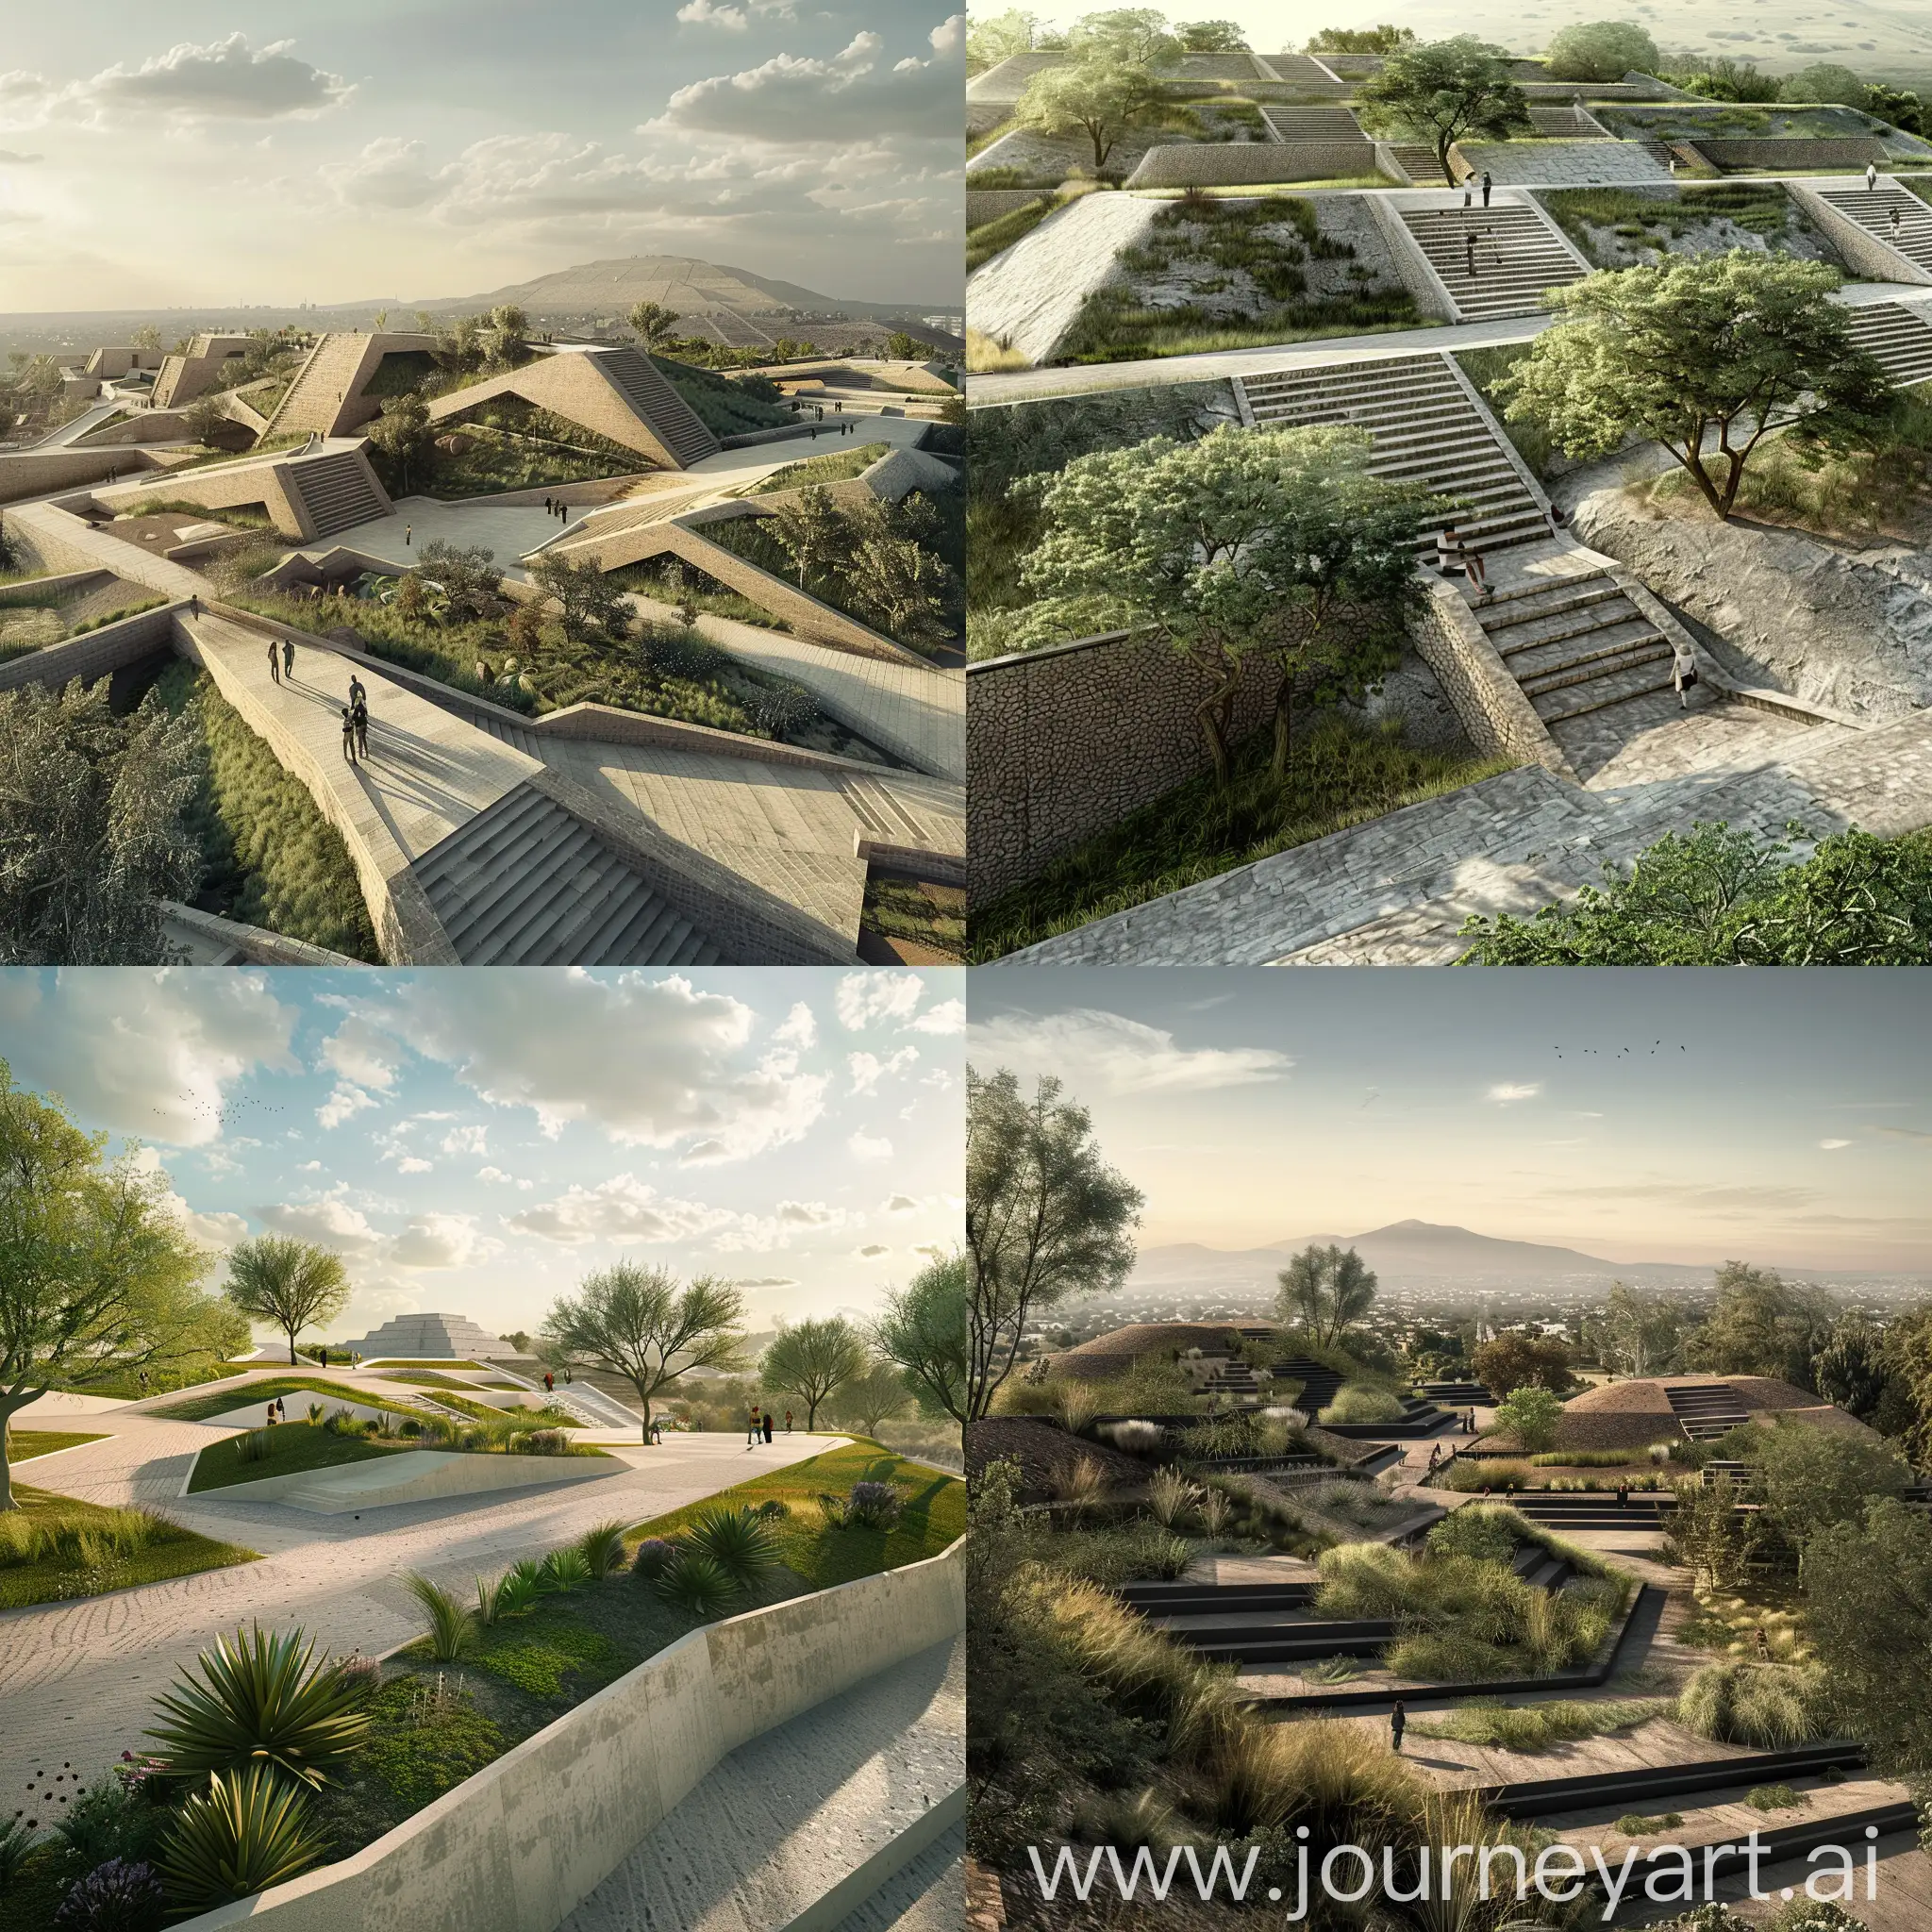 diseña un parque público inspirado en la geometría y arquitectura prehispánica de teotihuacan, respetando sus formas, juegos de alturas y monumentalidad, con taludes